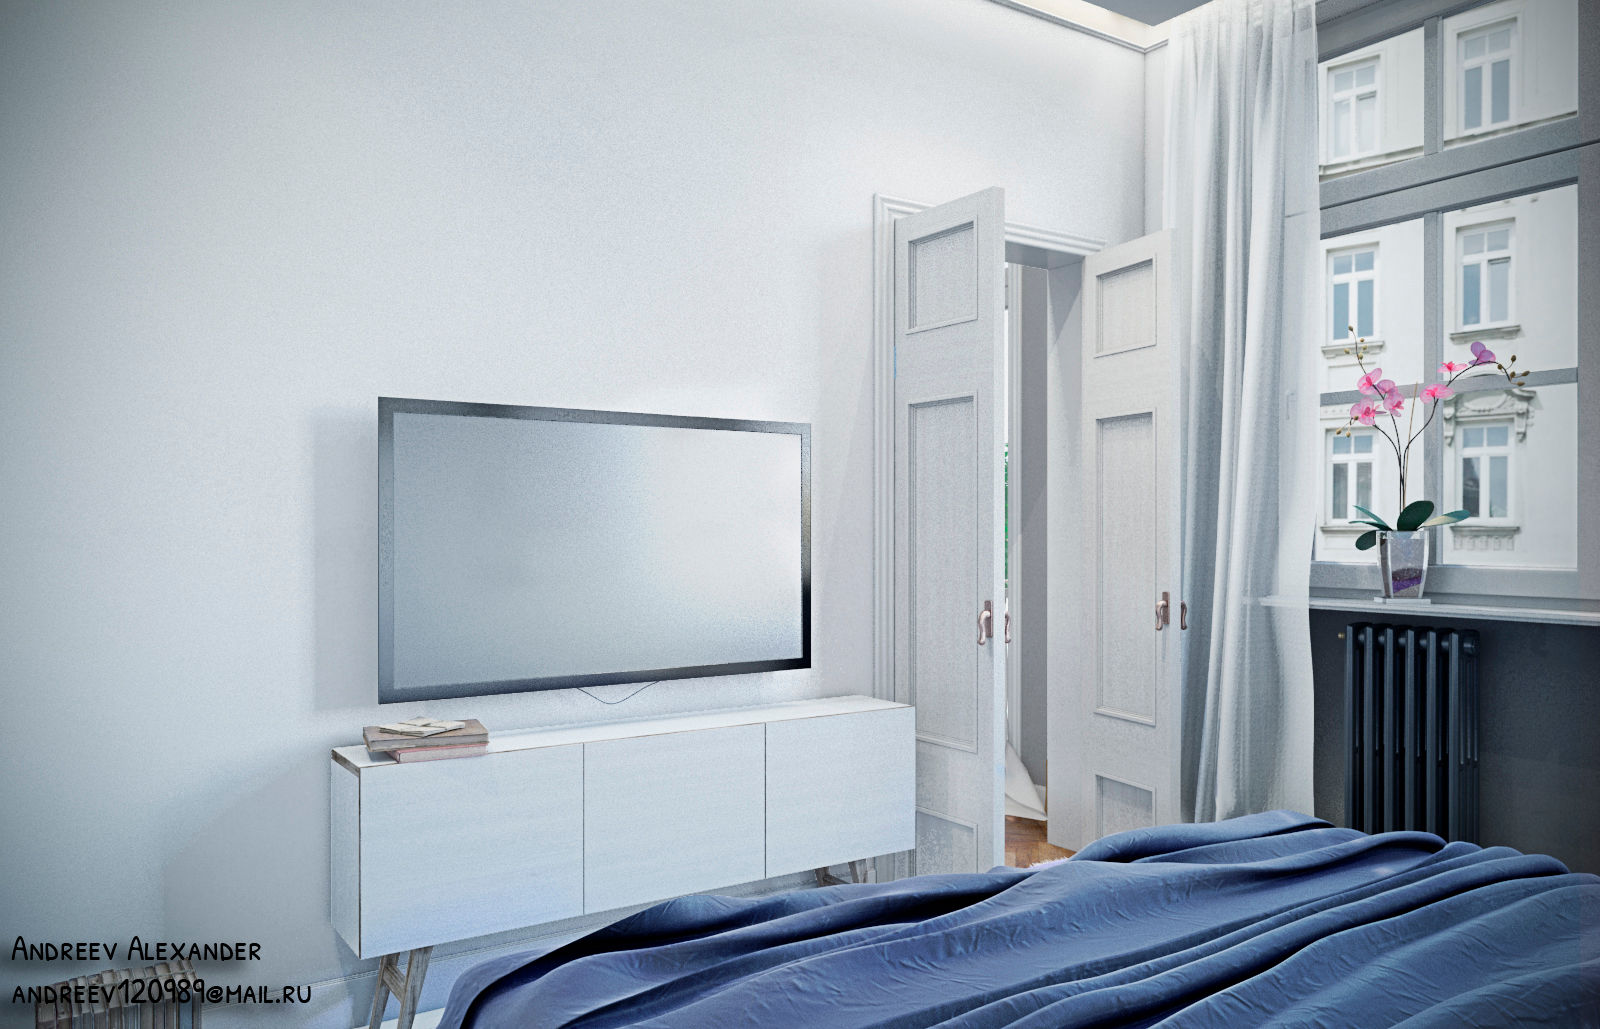 Визуализация квартиры, Андреев Александр Андреев Александр Scandinavian style bedroom